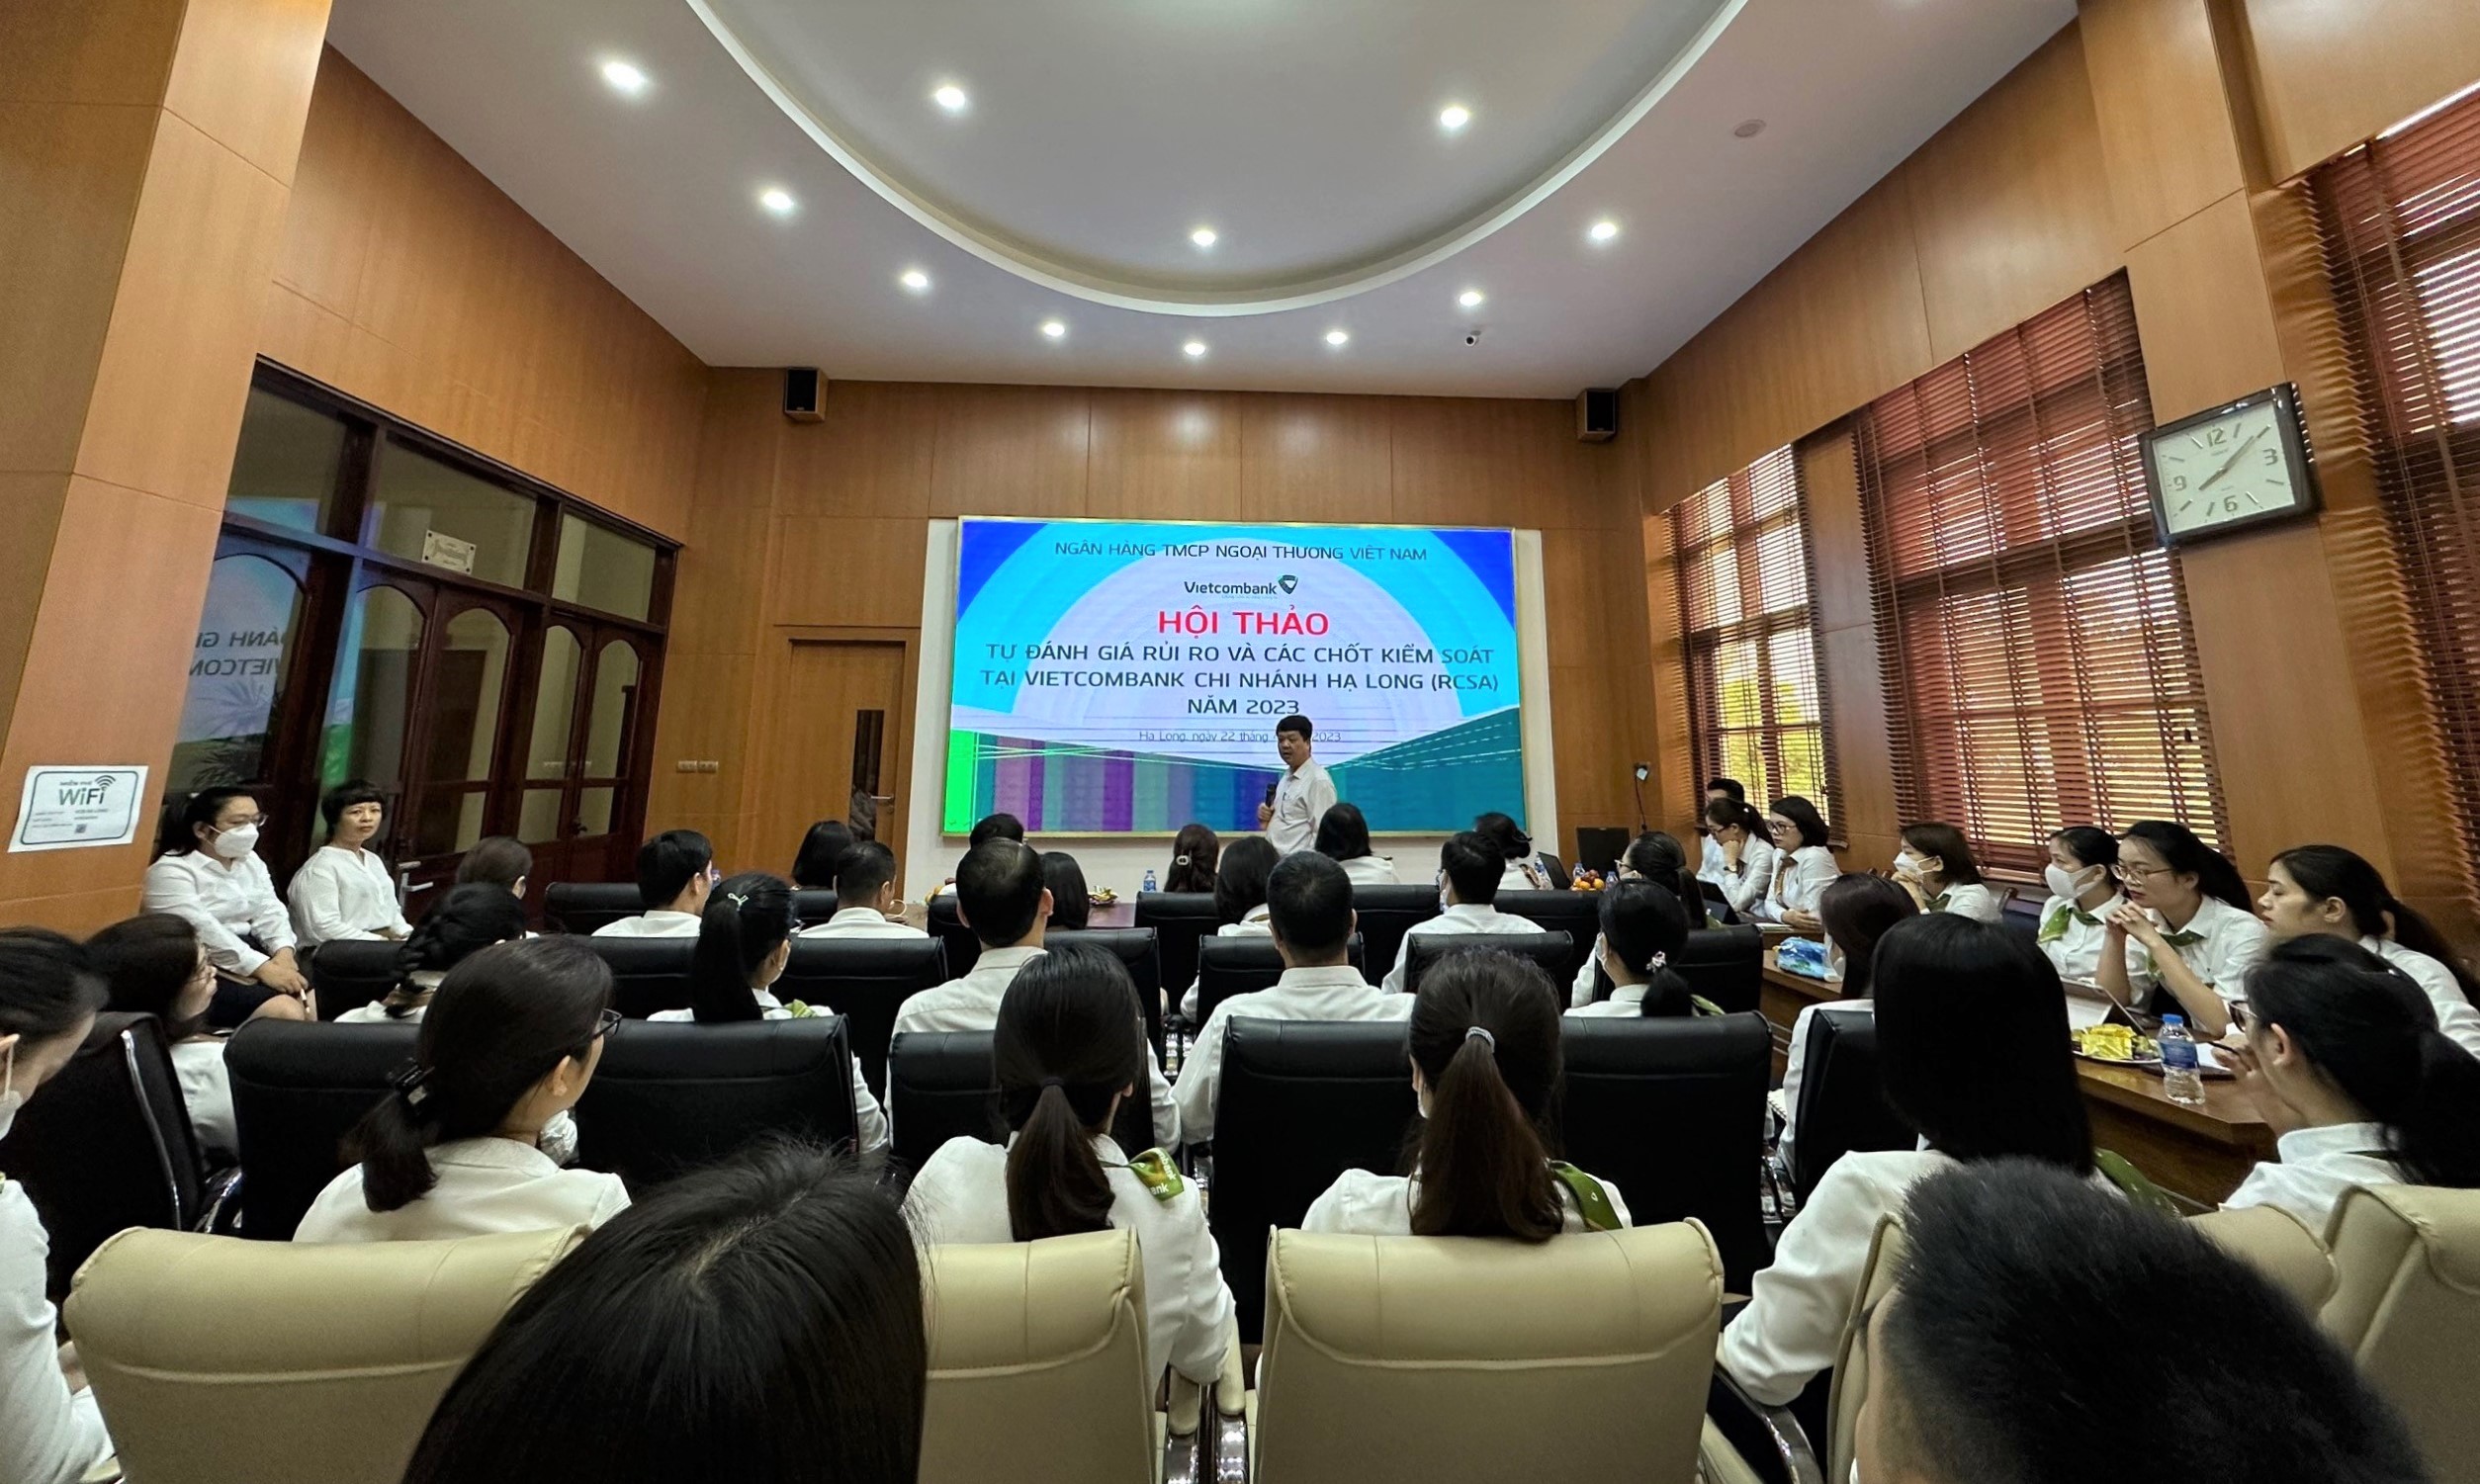 Vietcombank Hạ Long tổ chức hội thảo tự đánh giá rủi ro và các chốt kiểm soát (RCSA)